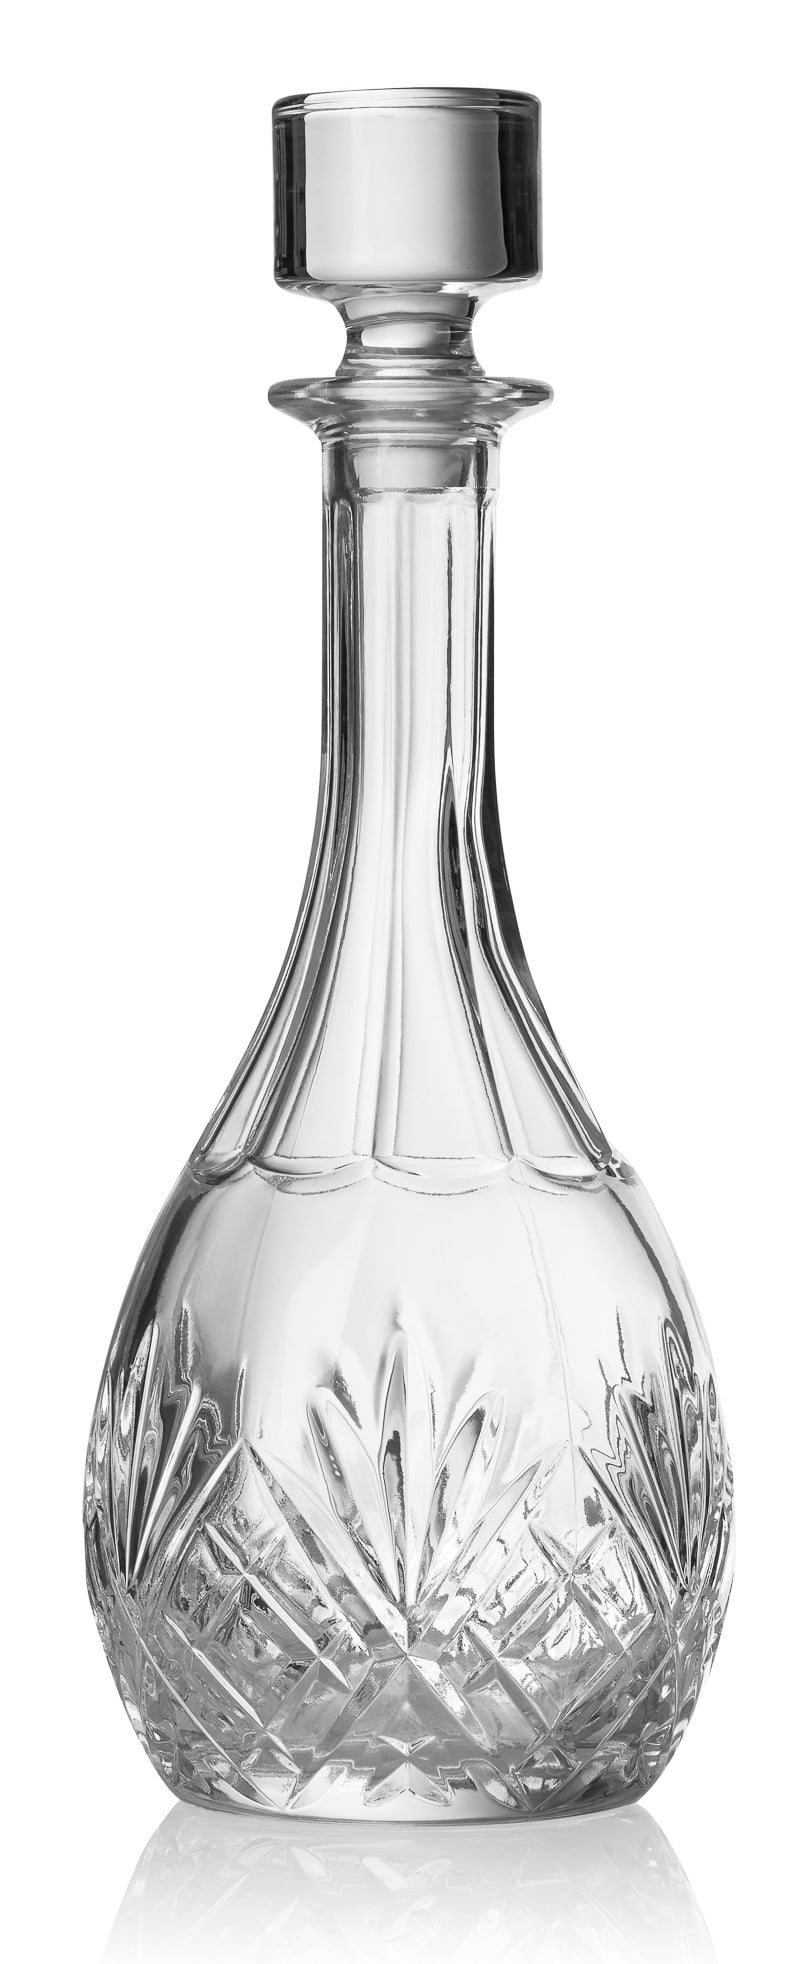 Crystal Glass Vino Rosso Caraffa N\A Decanter for Vino 2000ml 100% Bown Bown Bassa Grande Grande Board BARDA Un Regalo for chiunque 